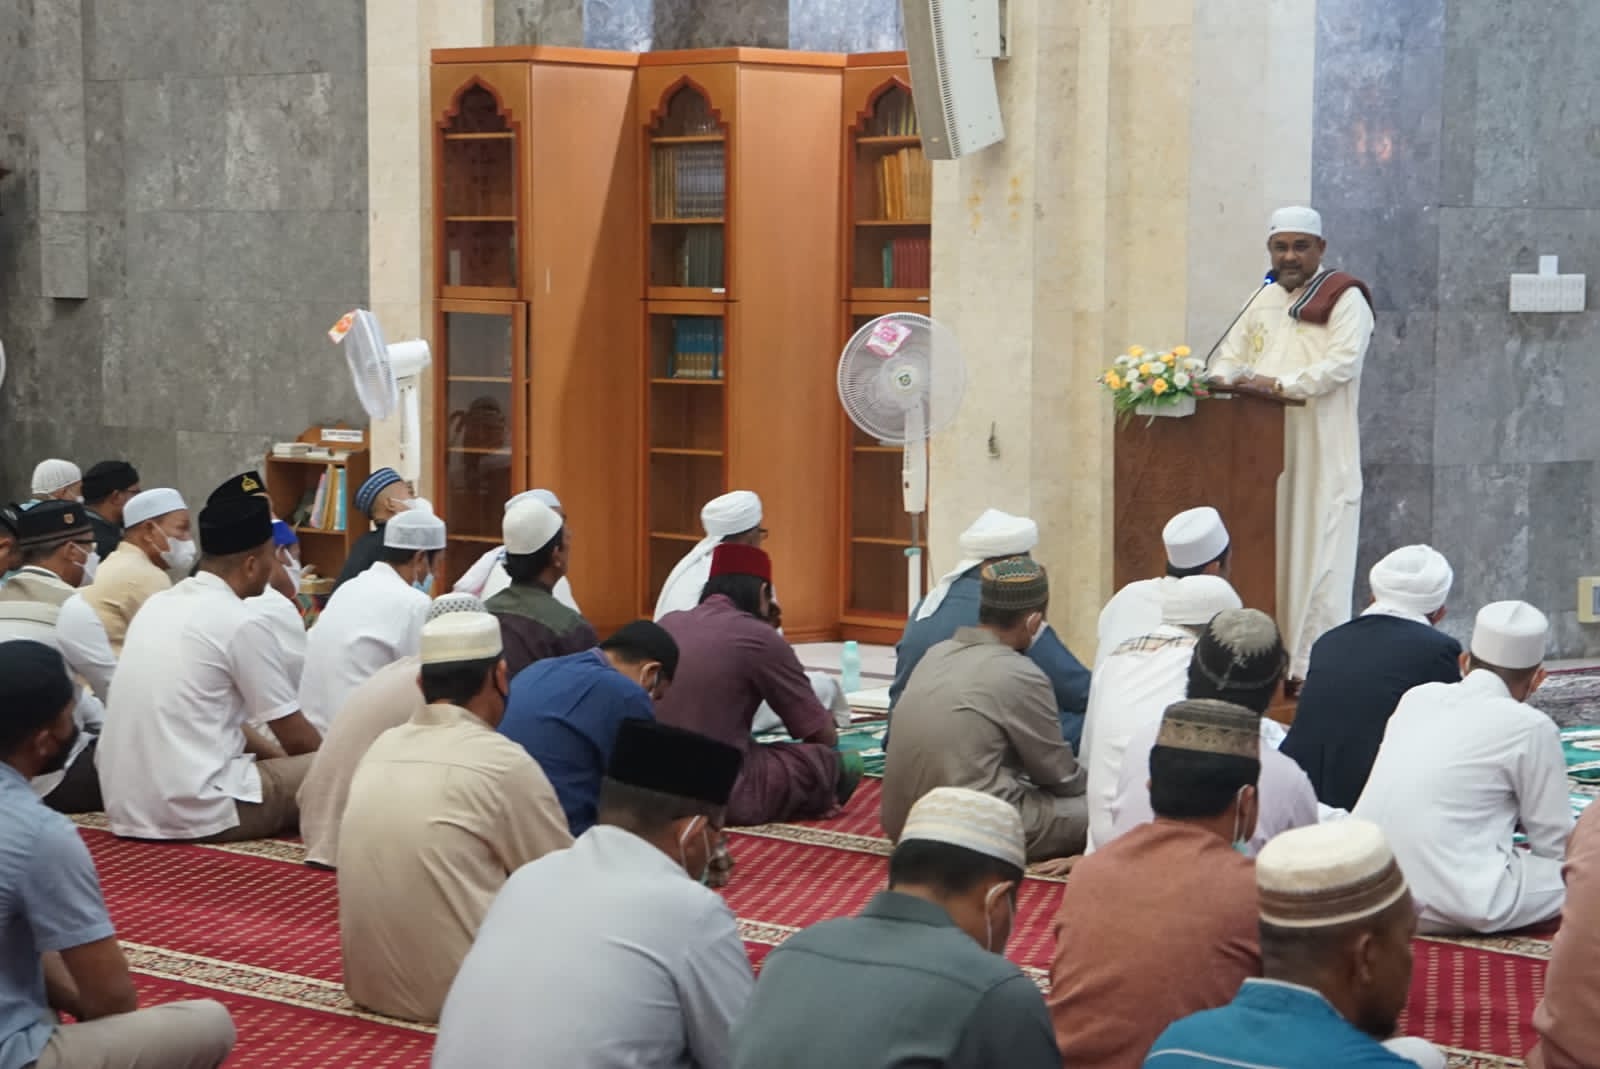 Safari Ramadhan Pemkab Karimun Kembali Digelar Setelah Vakum Karena Covid-19